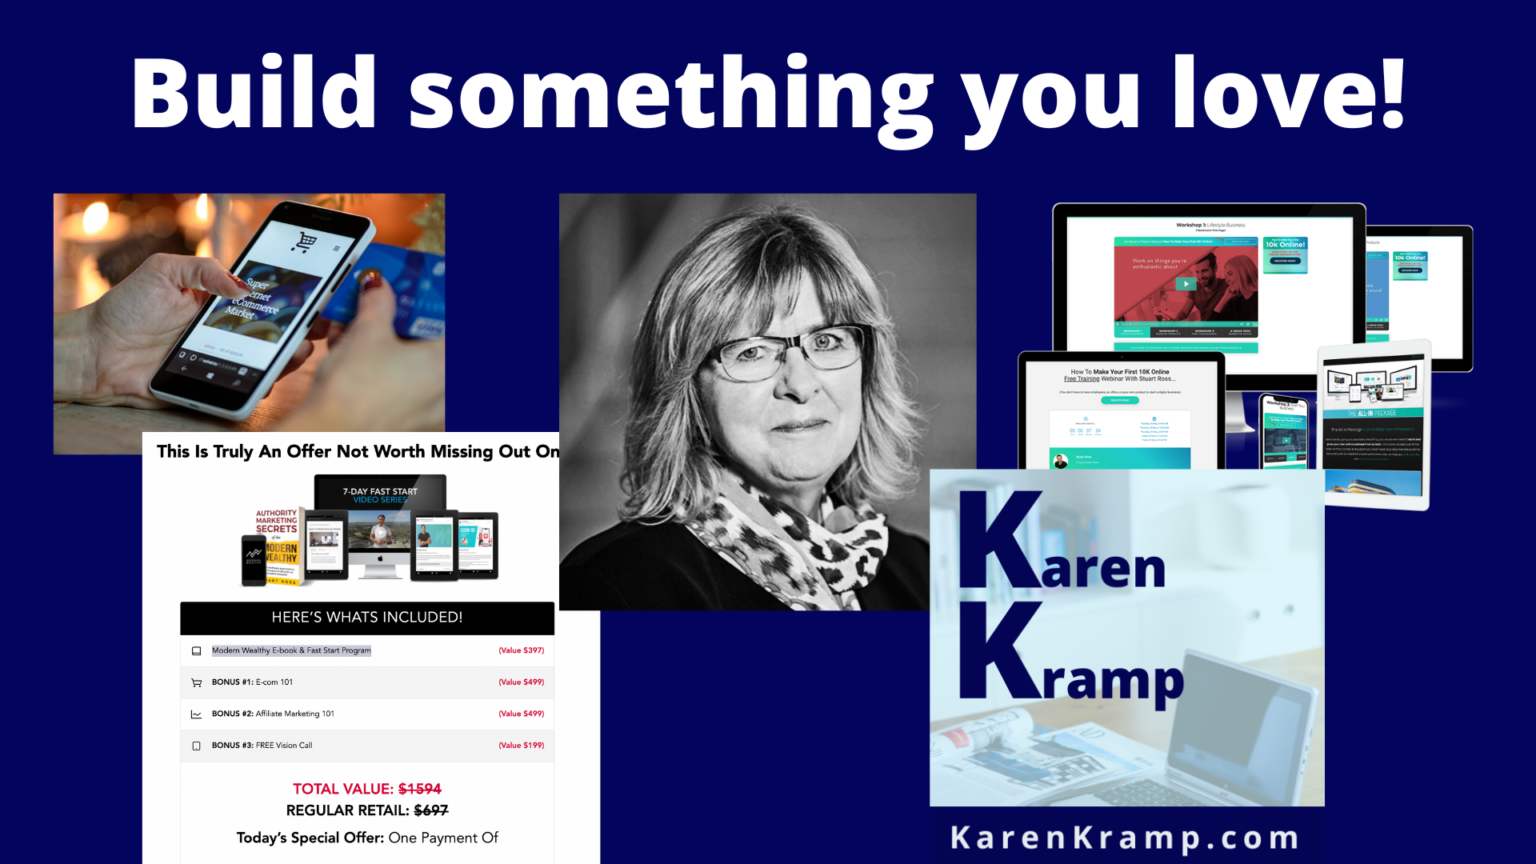 Karen Kramp